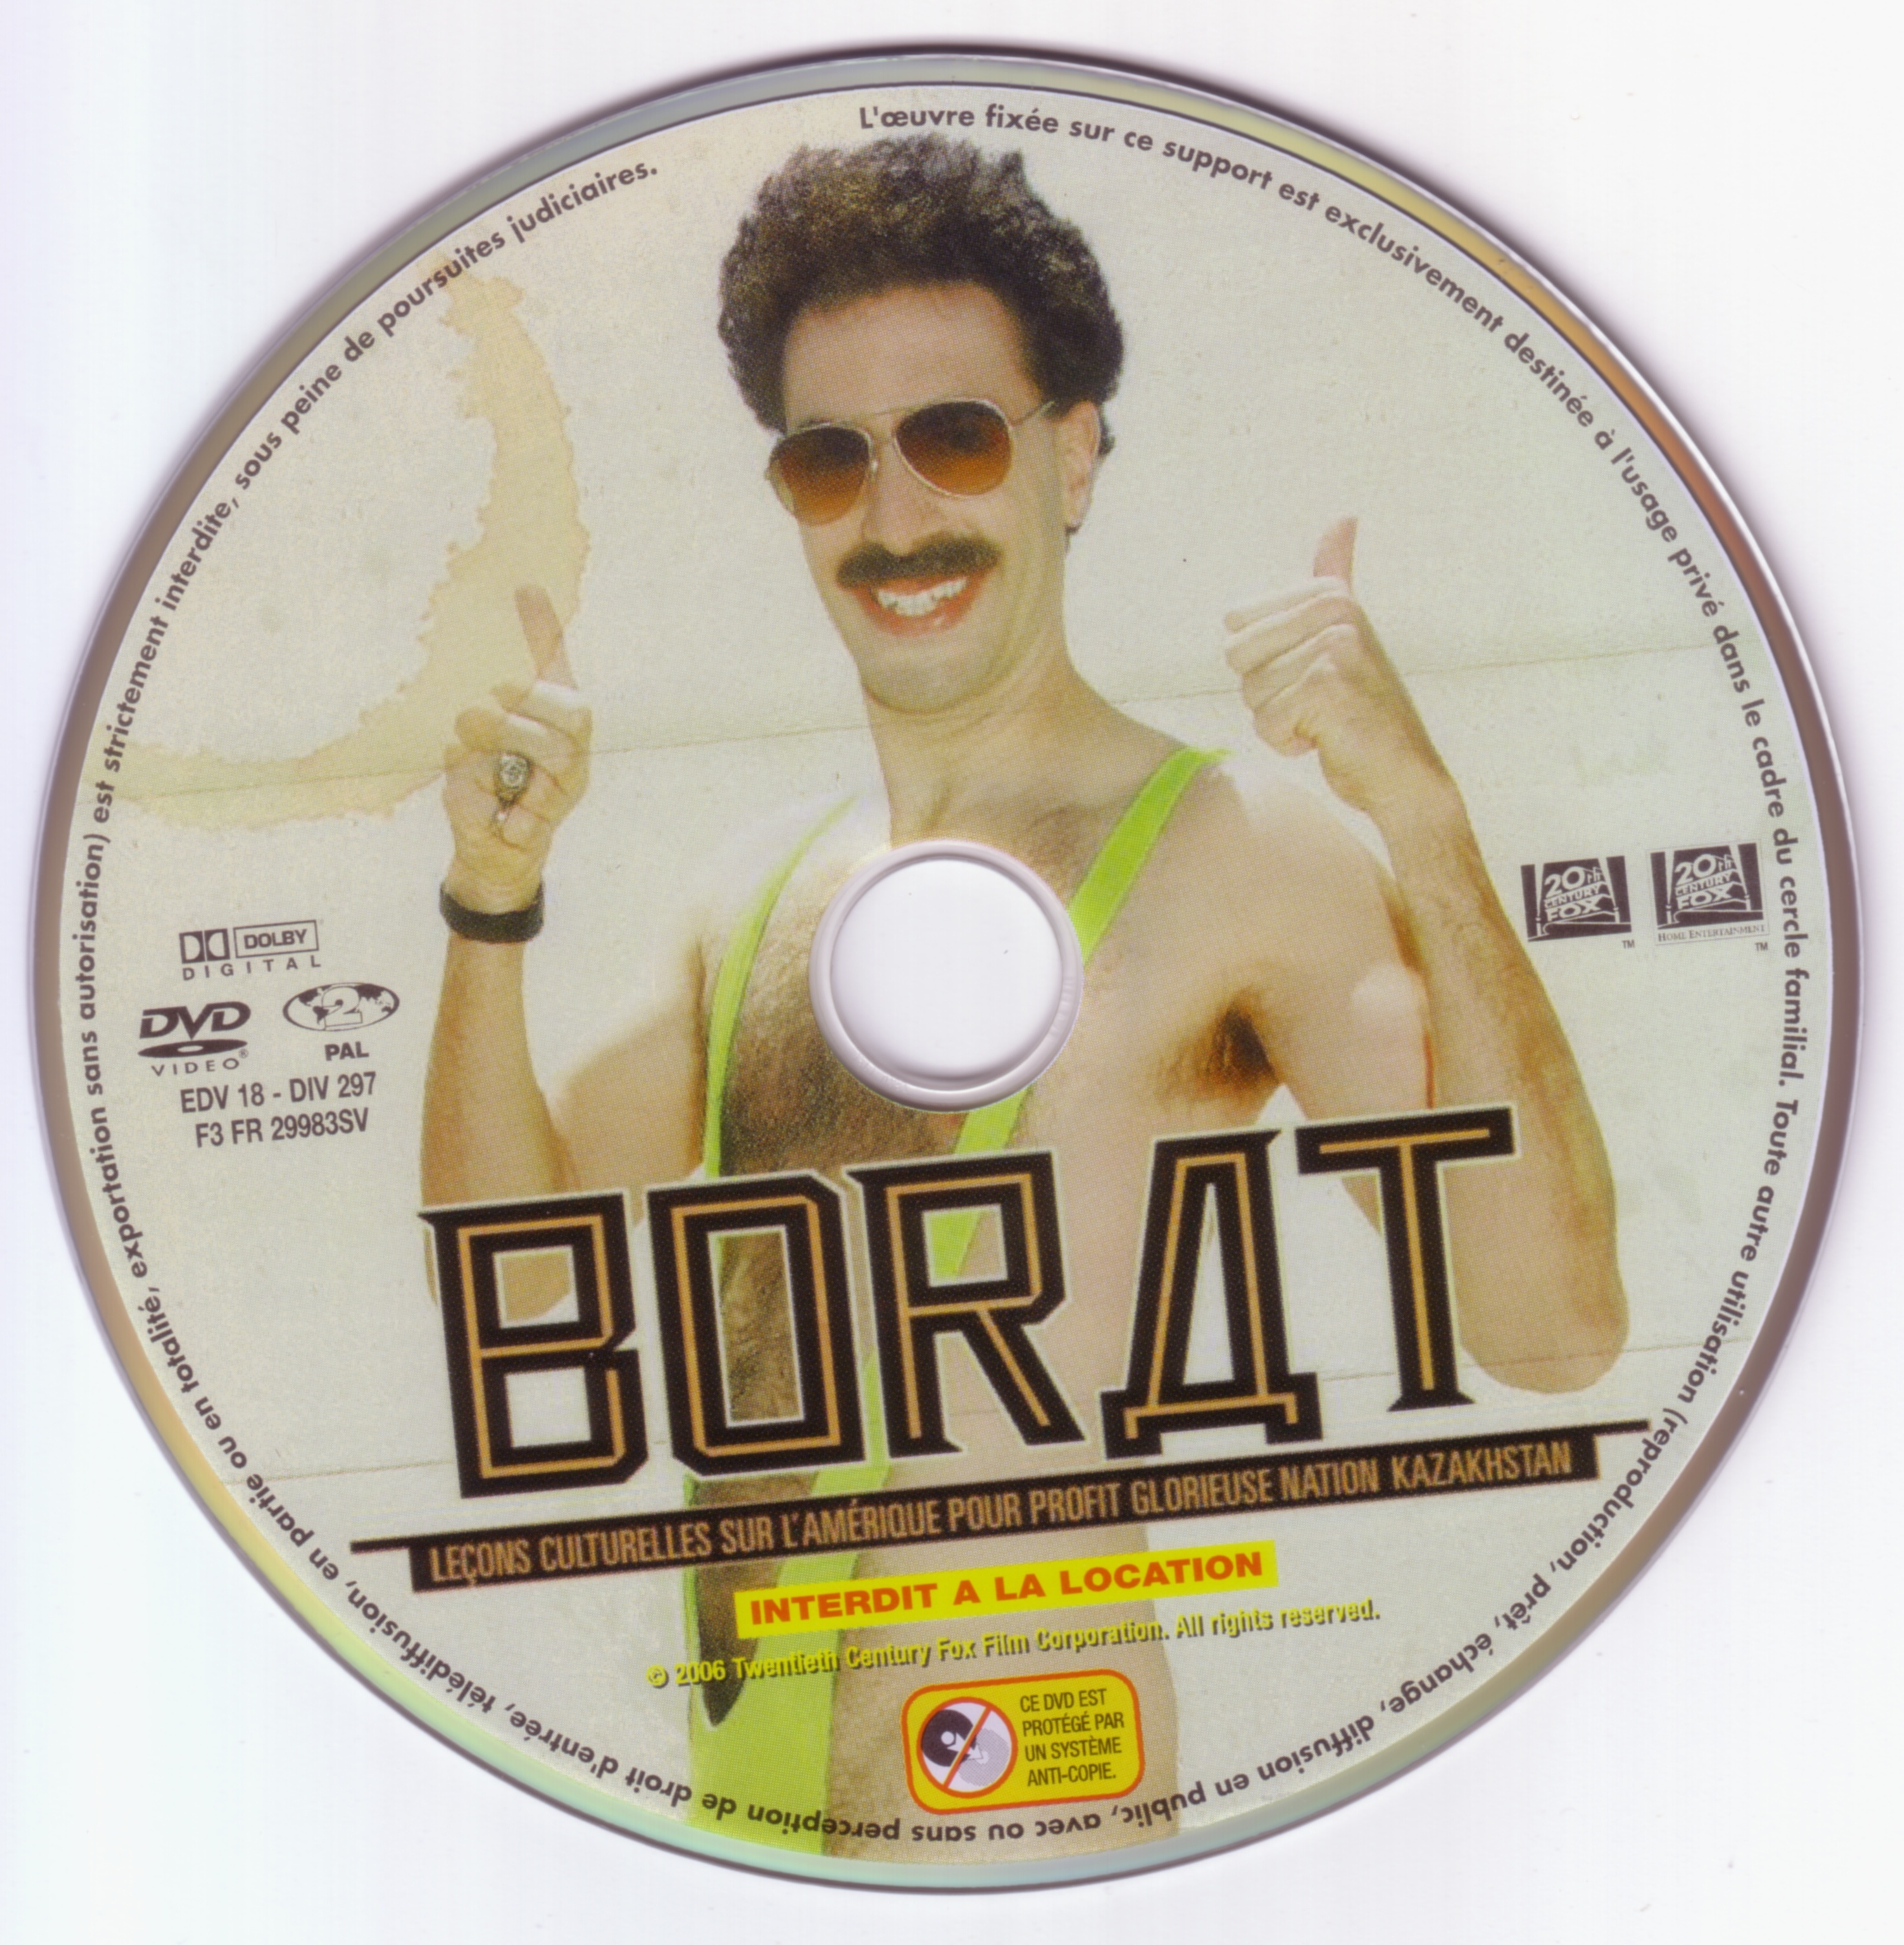 Borat v2